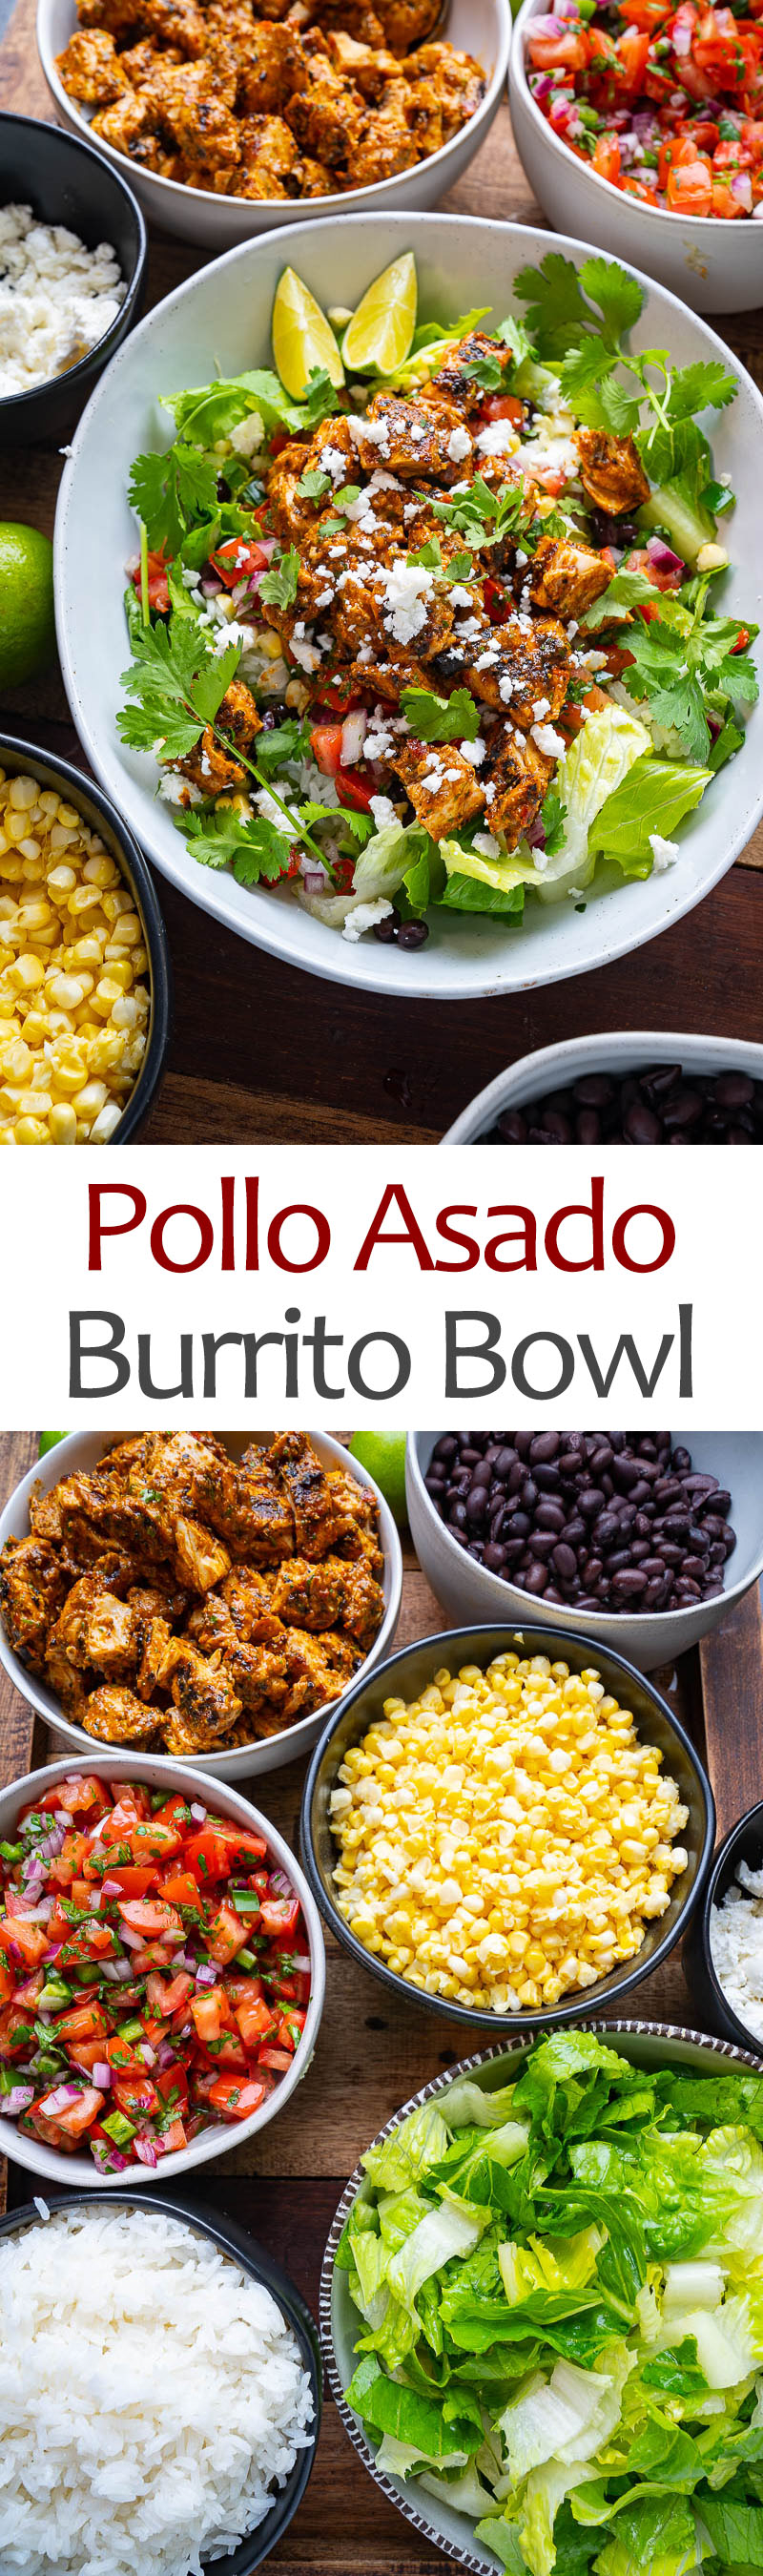 Pollo Asado Burrito Bowl